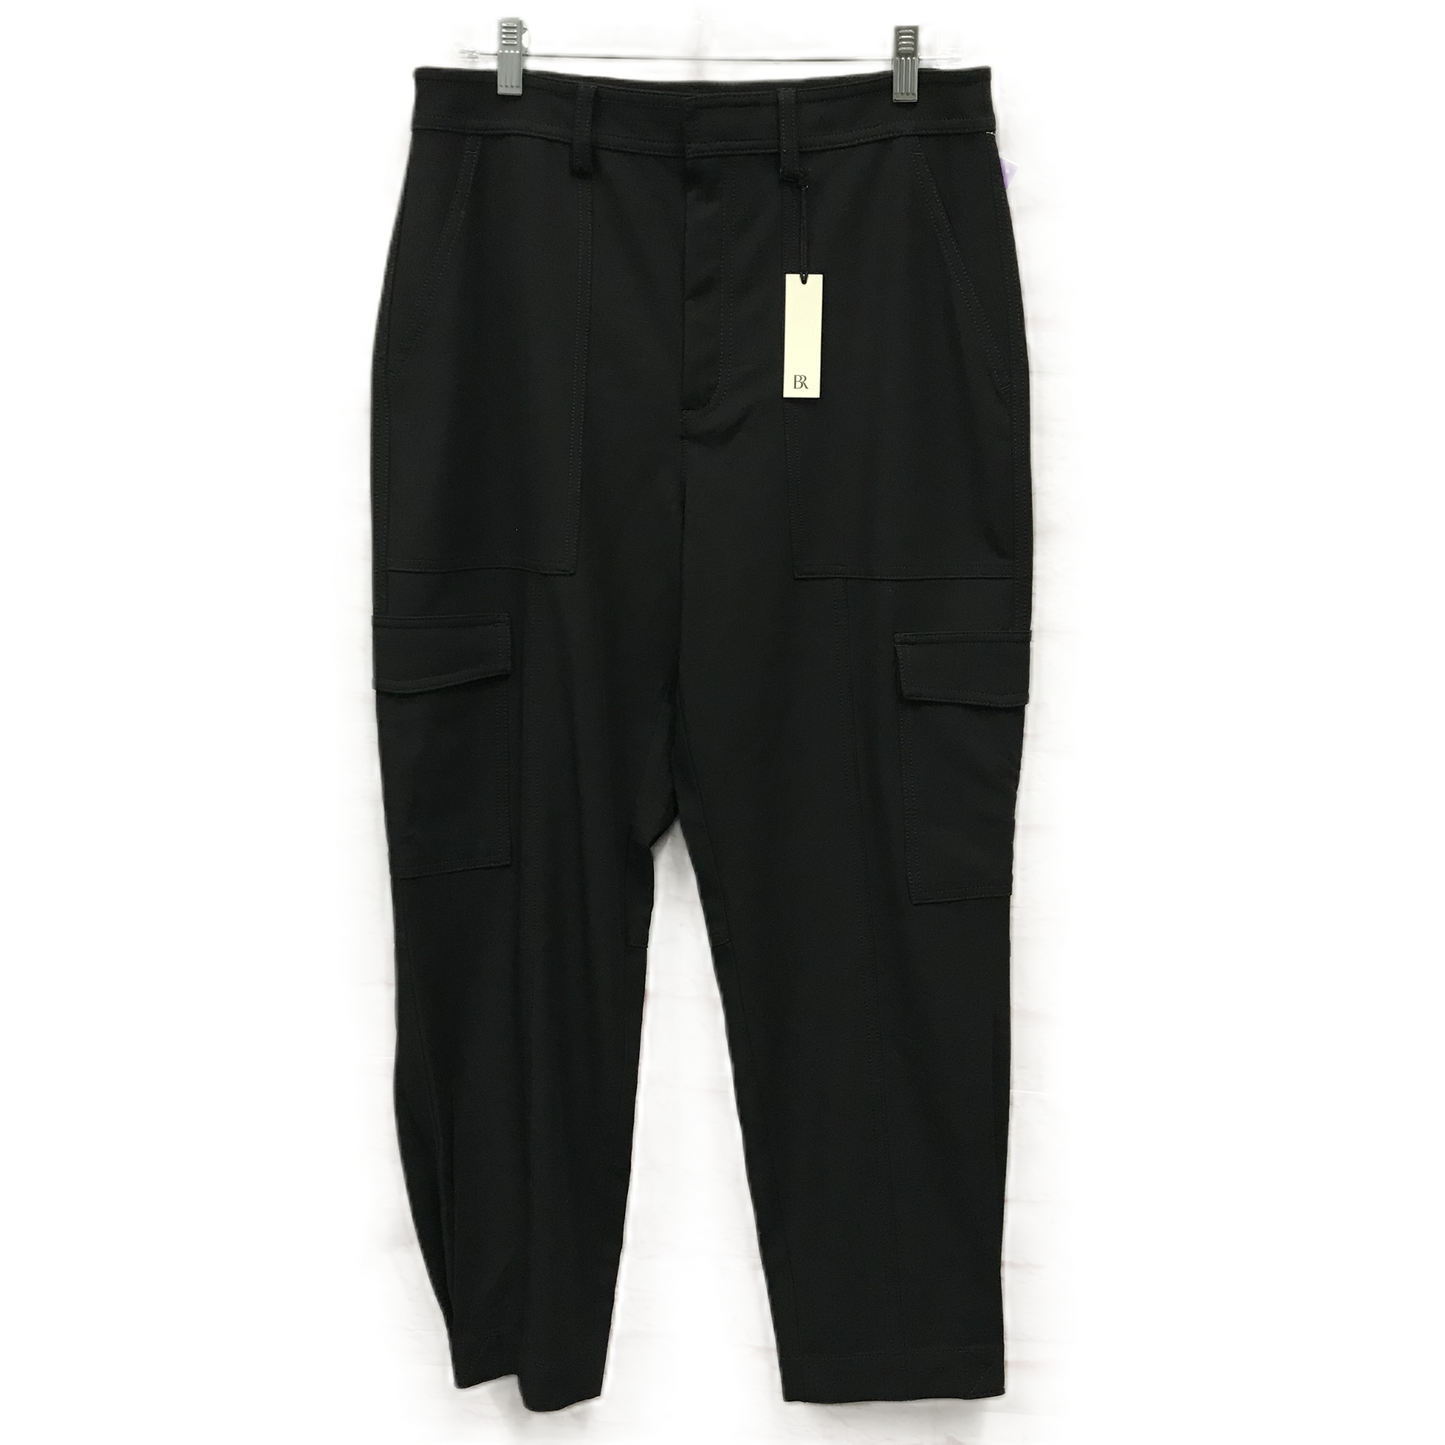 Black Pants Dress By Banana Republic, Size: 10